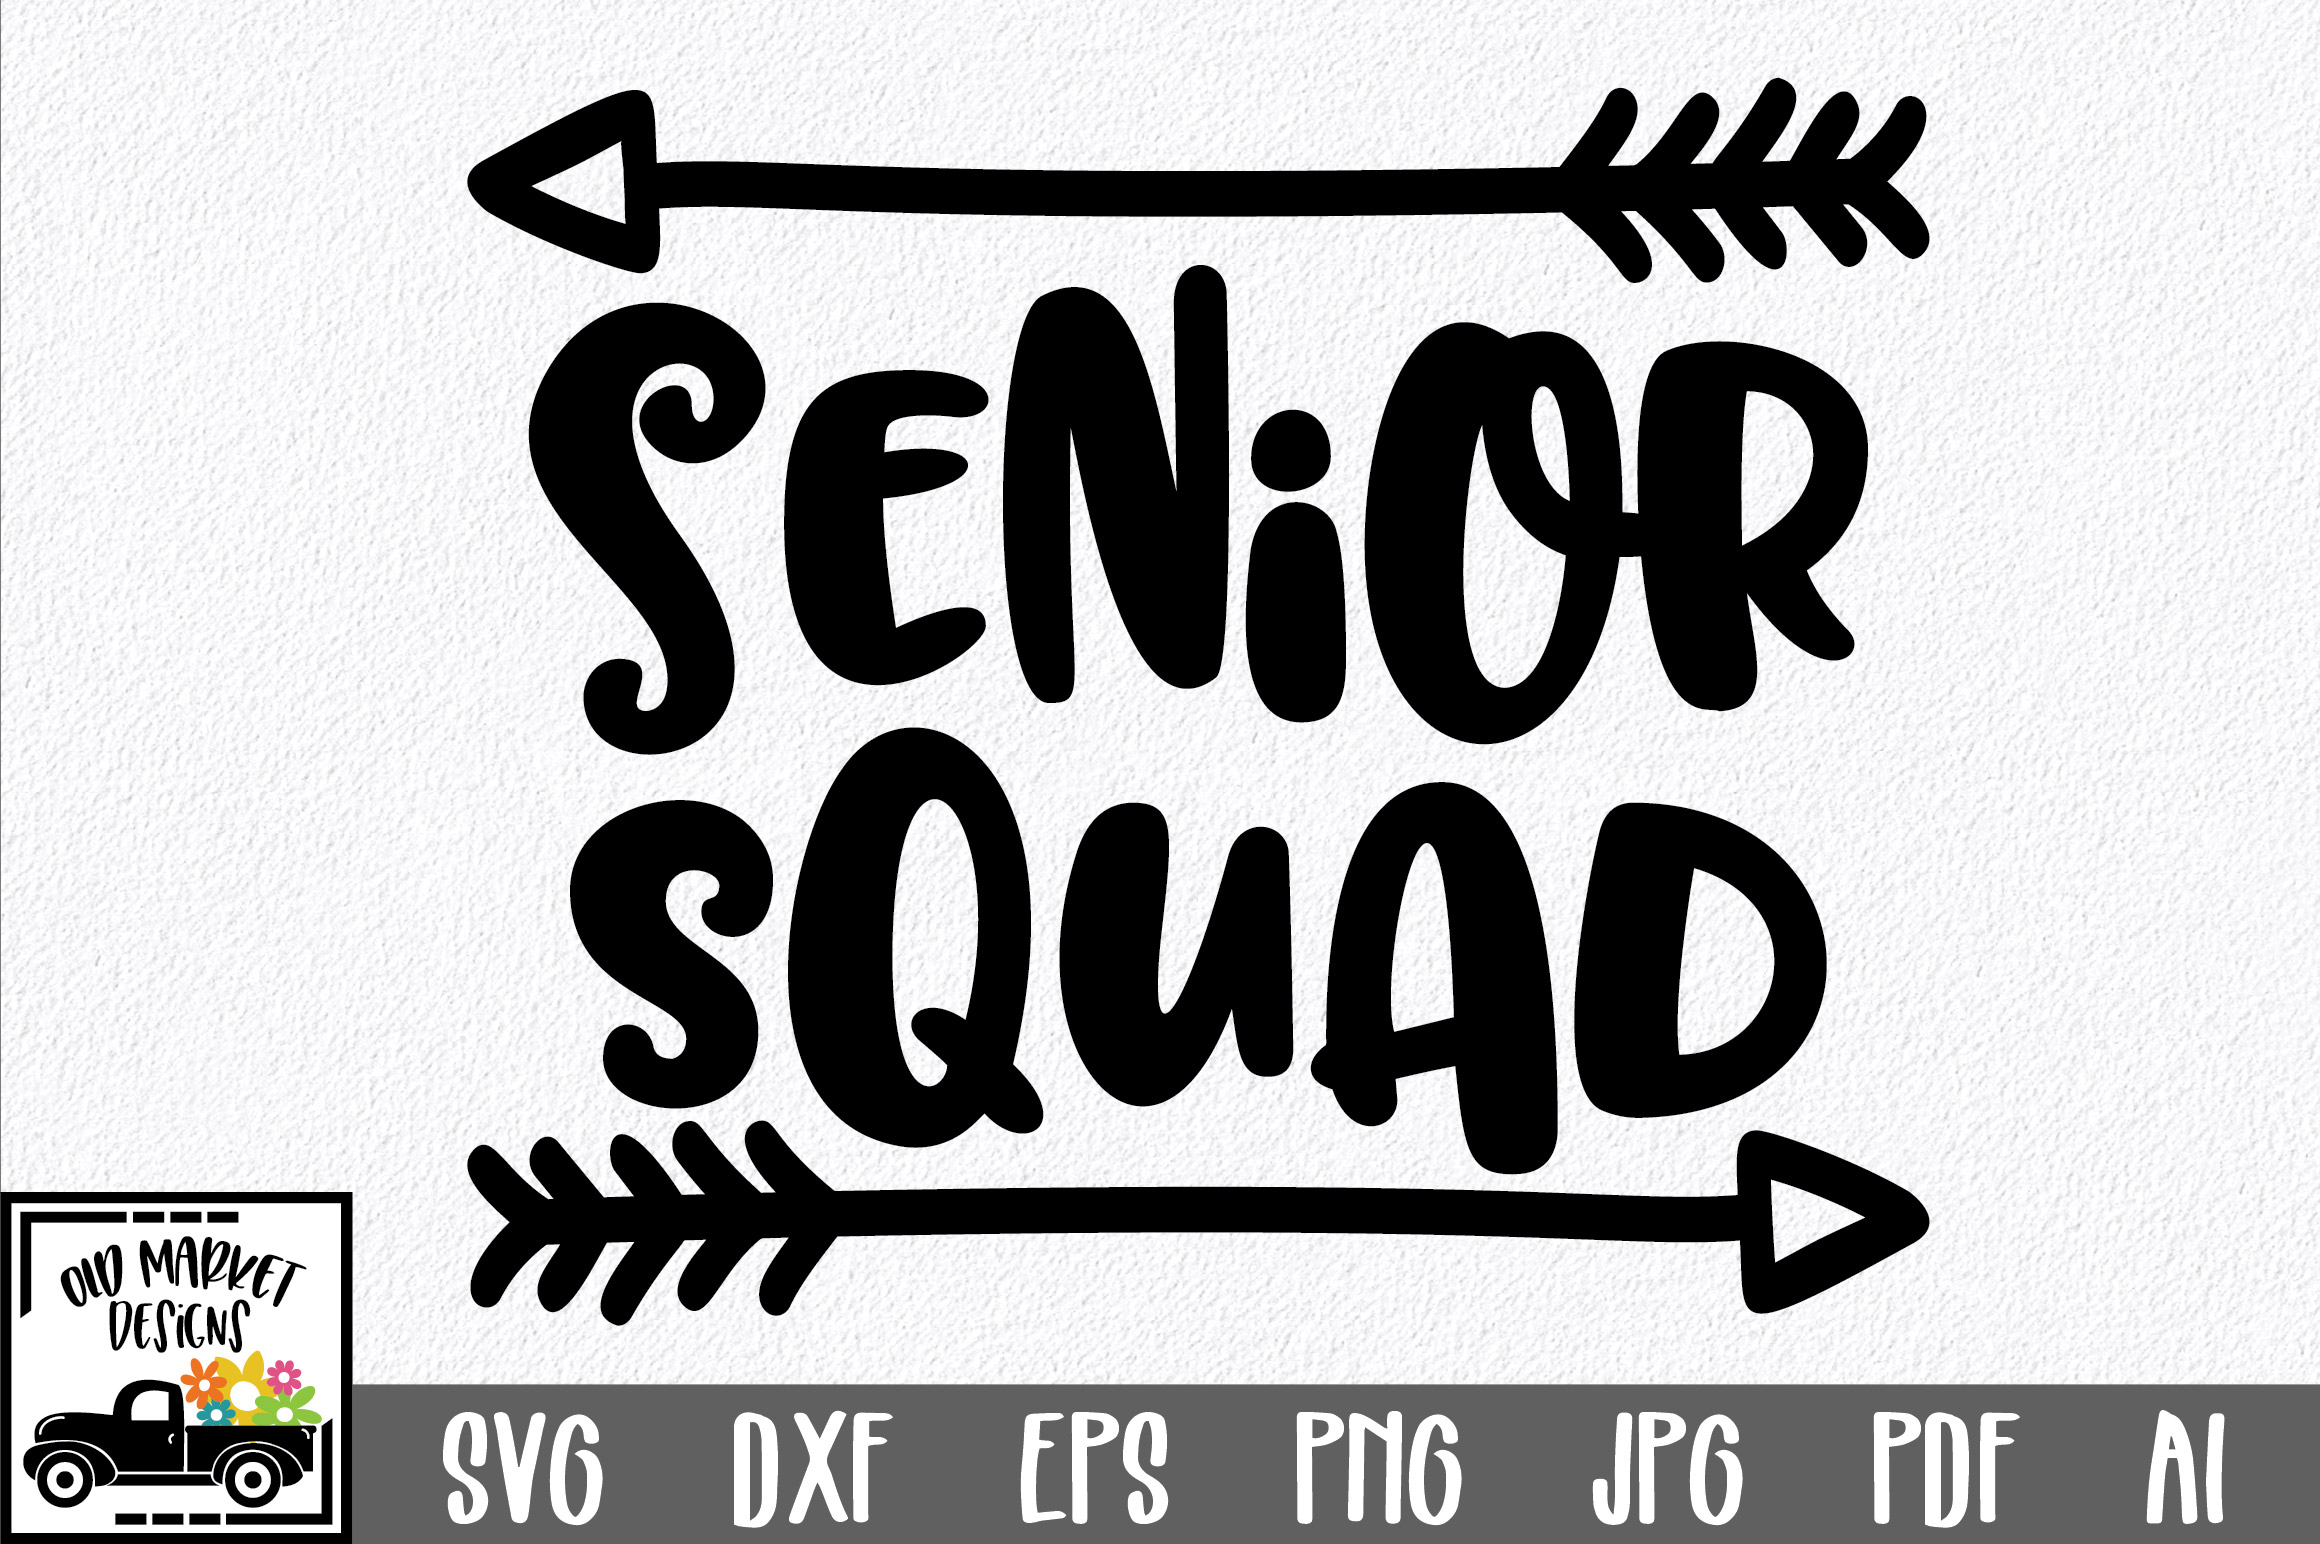 Download Senior Squad SVG Cut File - Graduation SVG DXF EPS PNG JPG